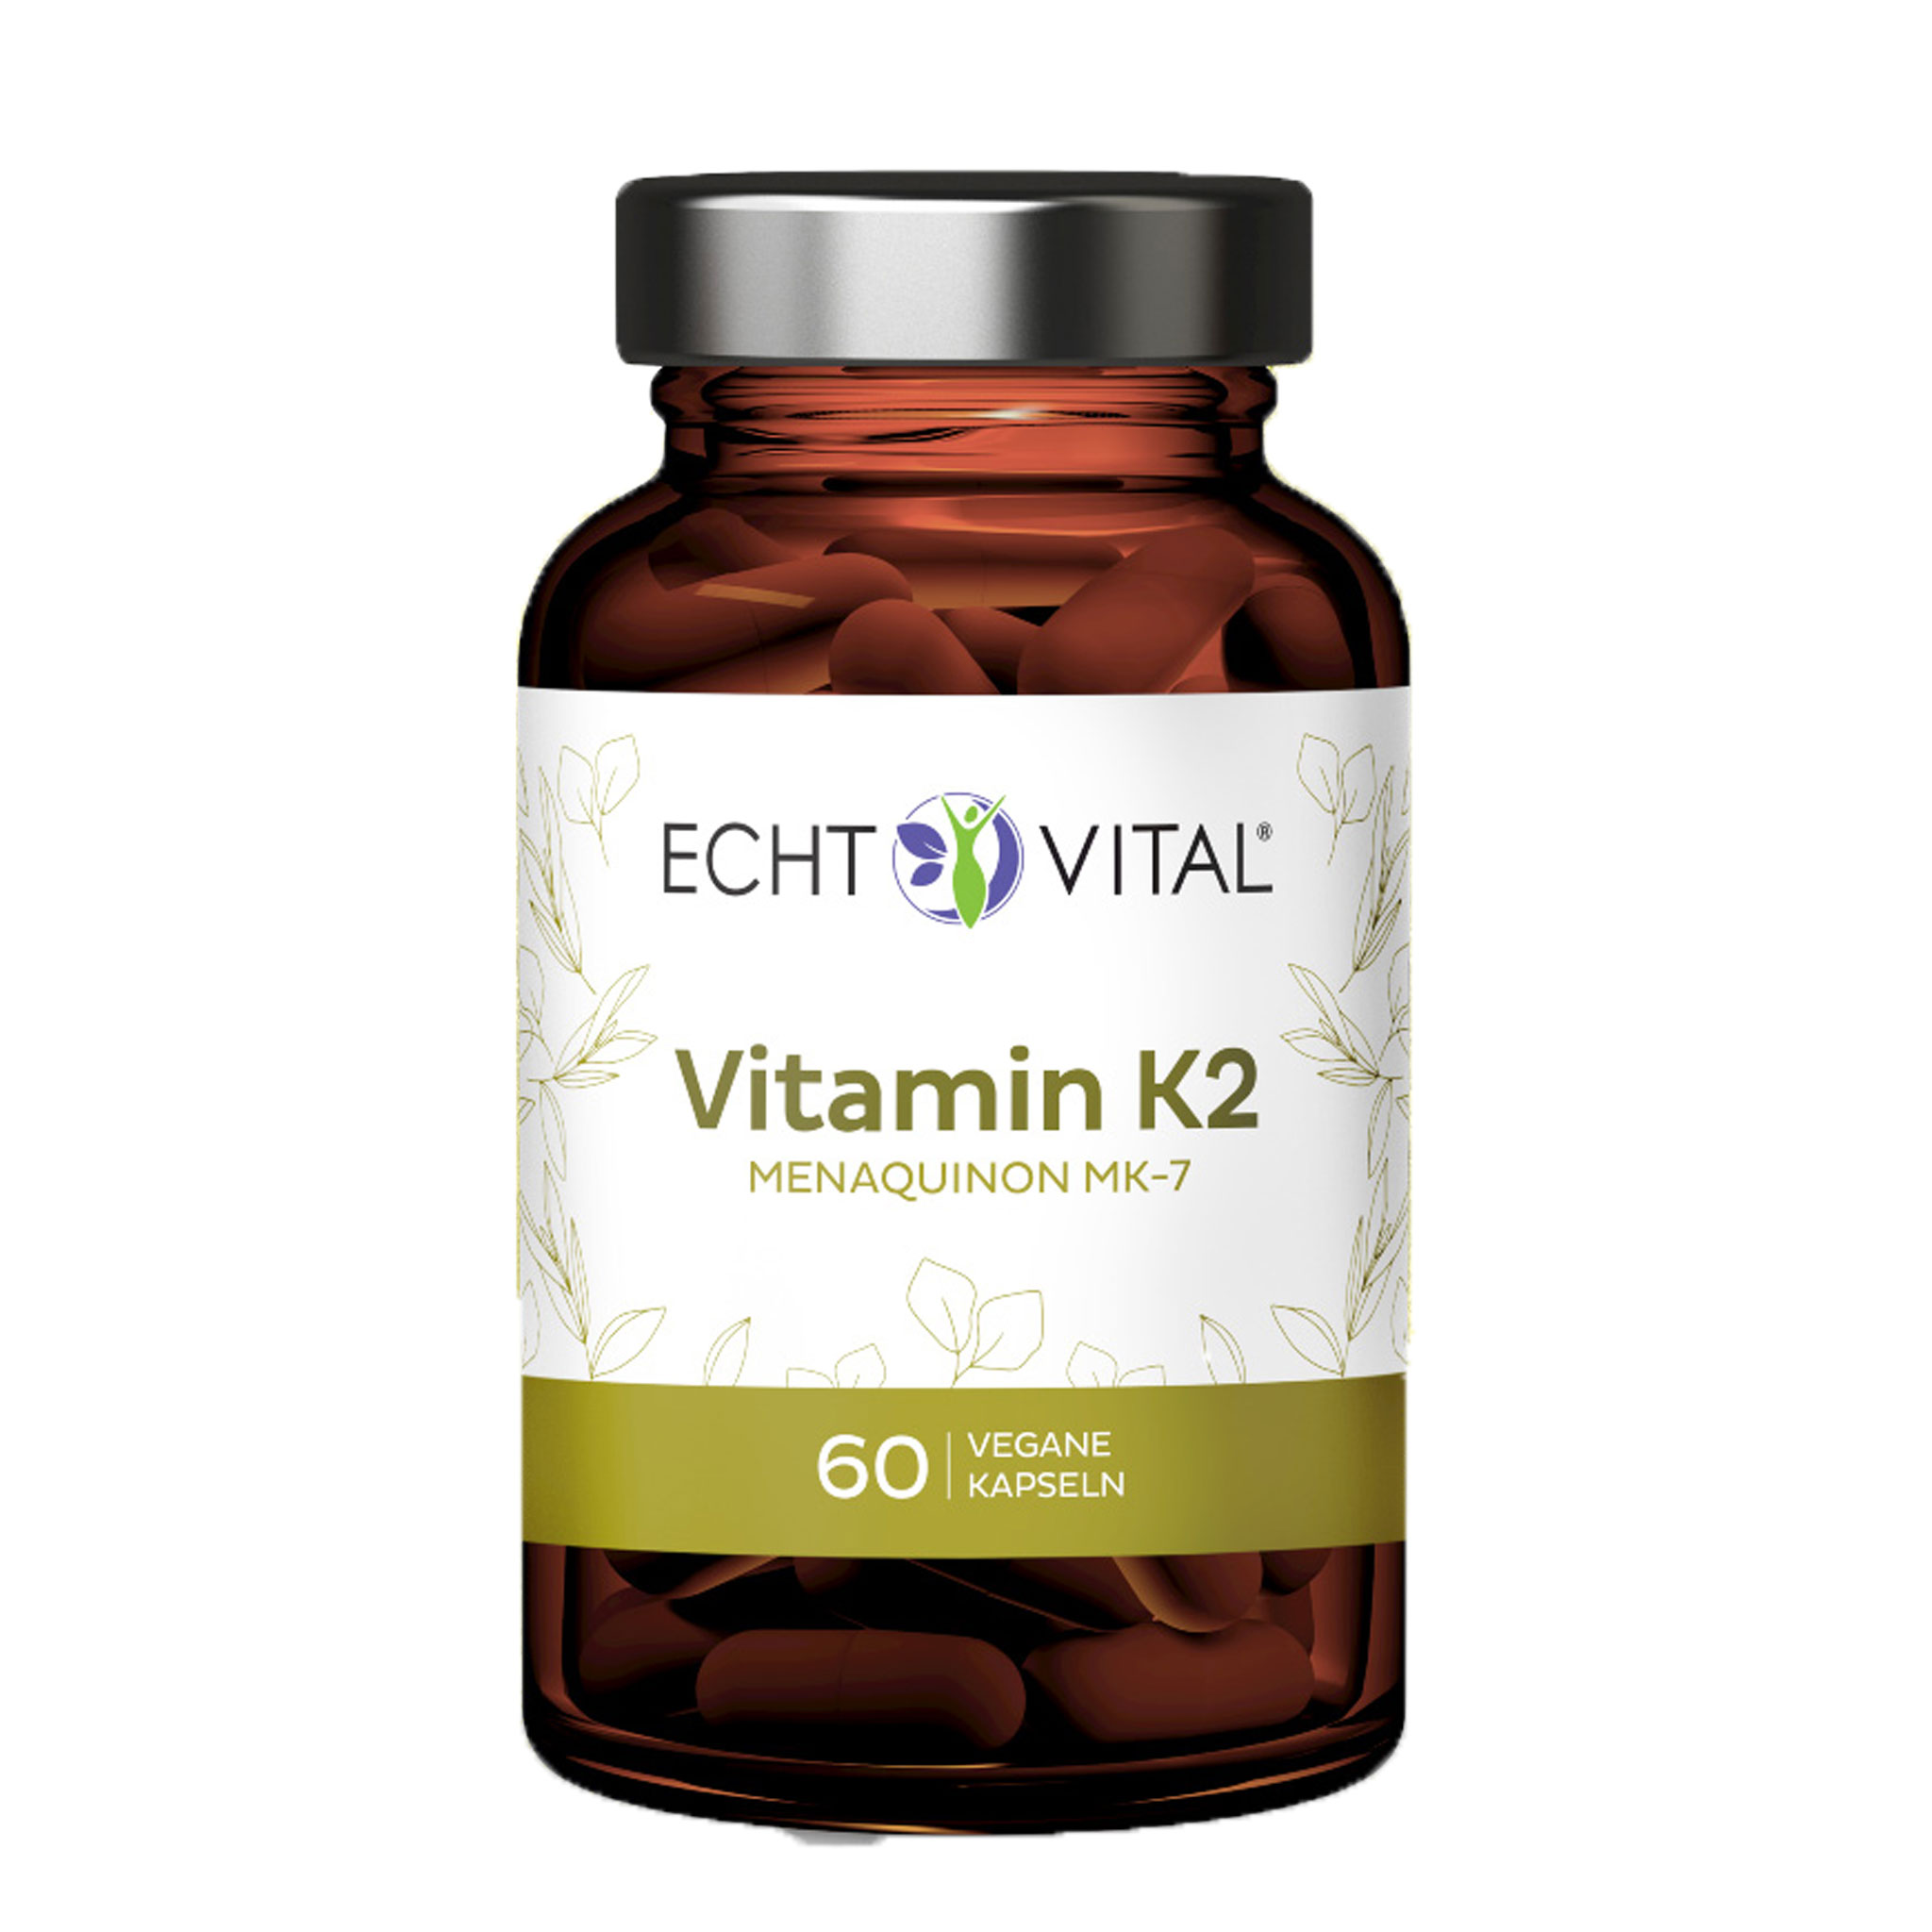 Vitamin K2 MK-7 von Echt Vital beinhaltet 60 vegane Kapseln